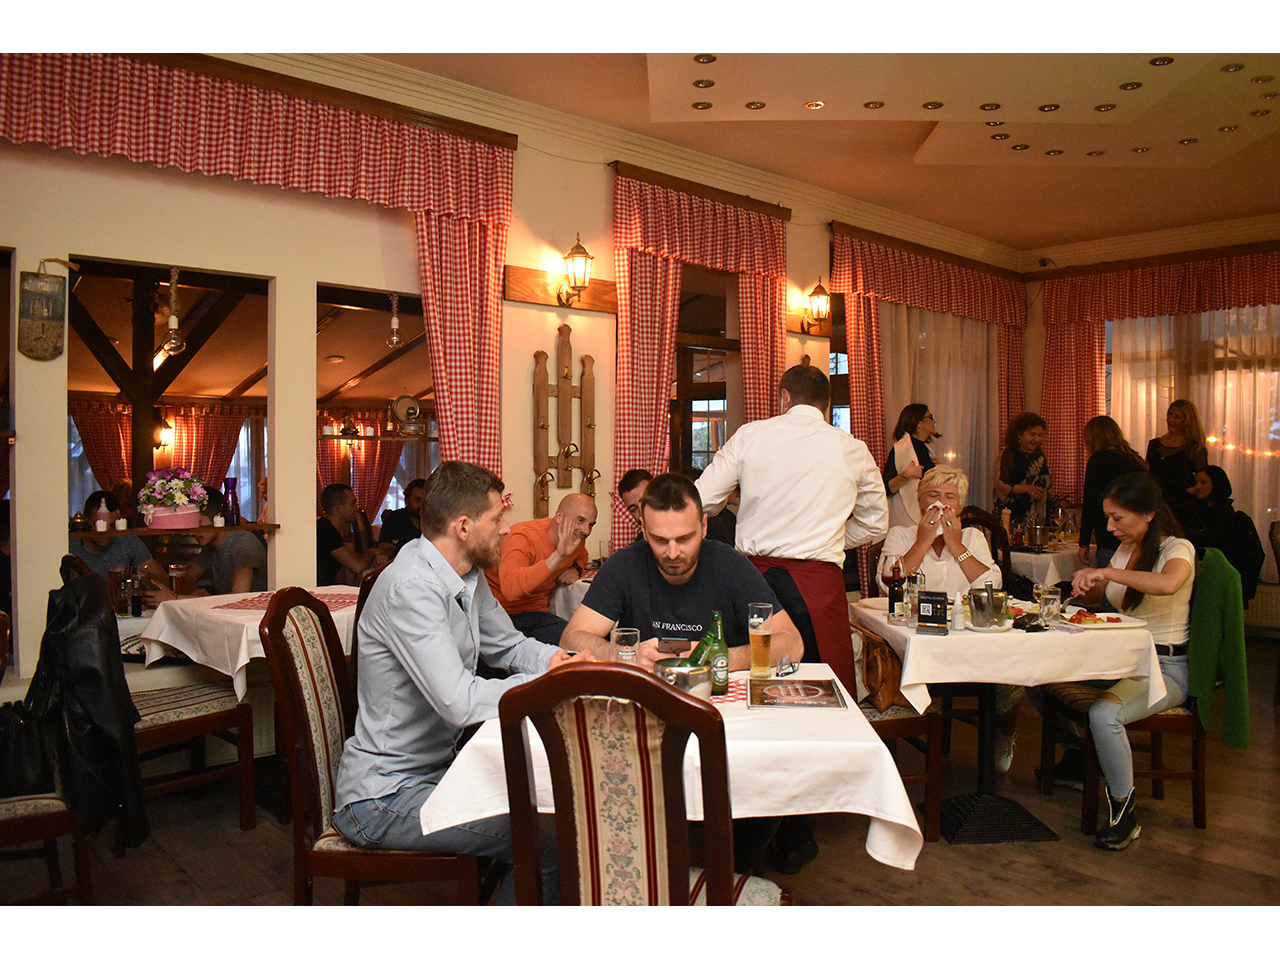 ART MODENA RESTAURANT Restaurants for weddings, celebrations Beograd